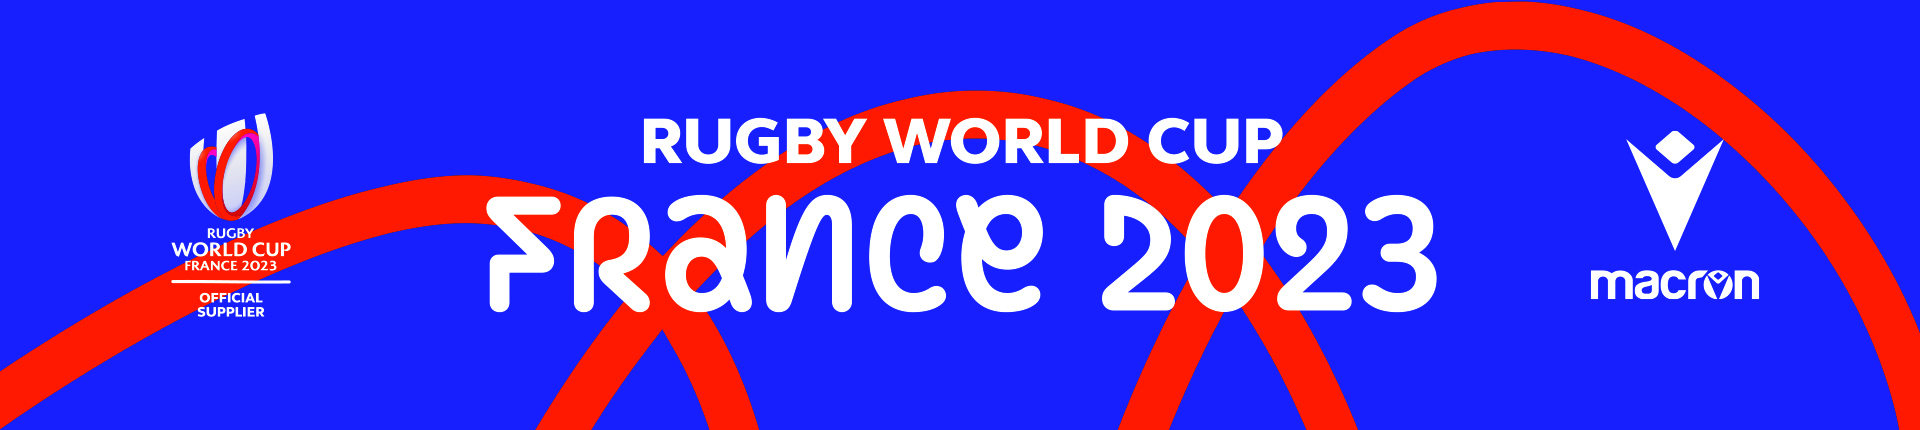 MACRON_rwc2023_coupe_du_monde_de_rugby_France_2023_produits_officiels_sgequipement_sg_equipement